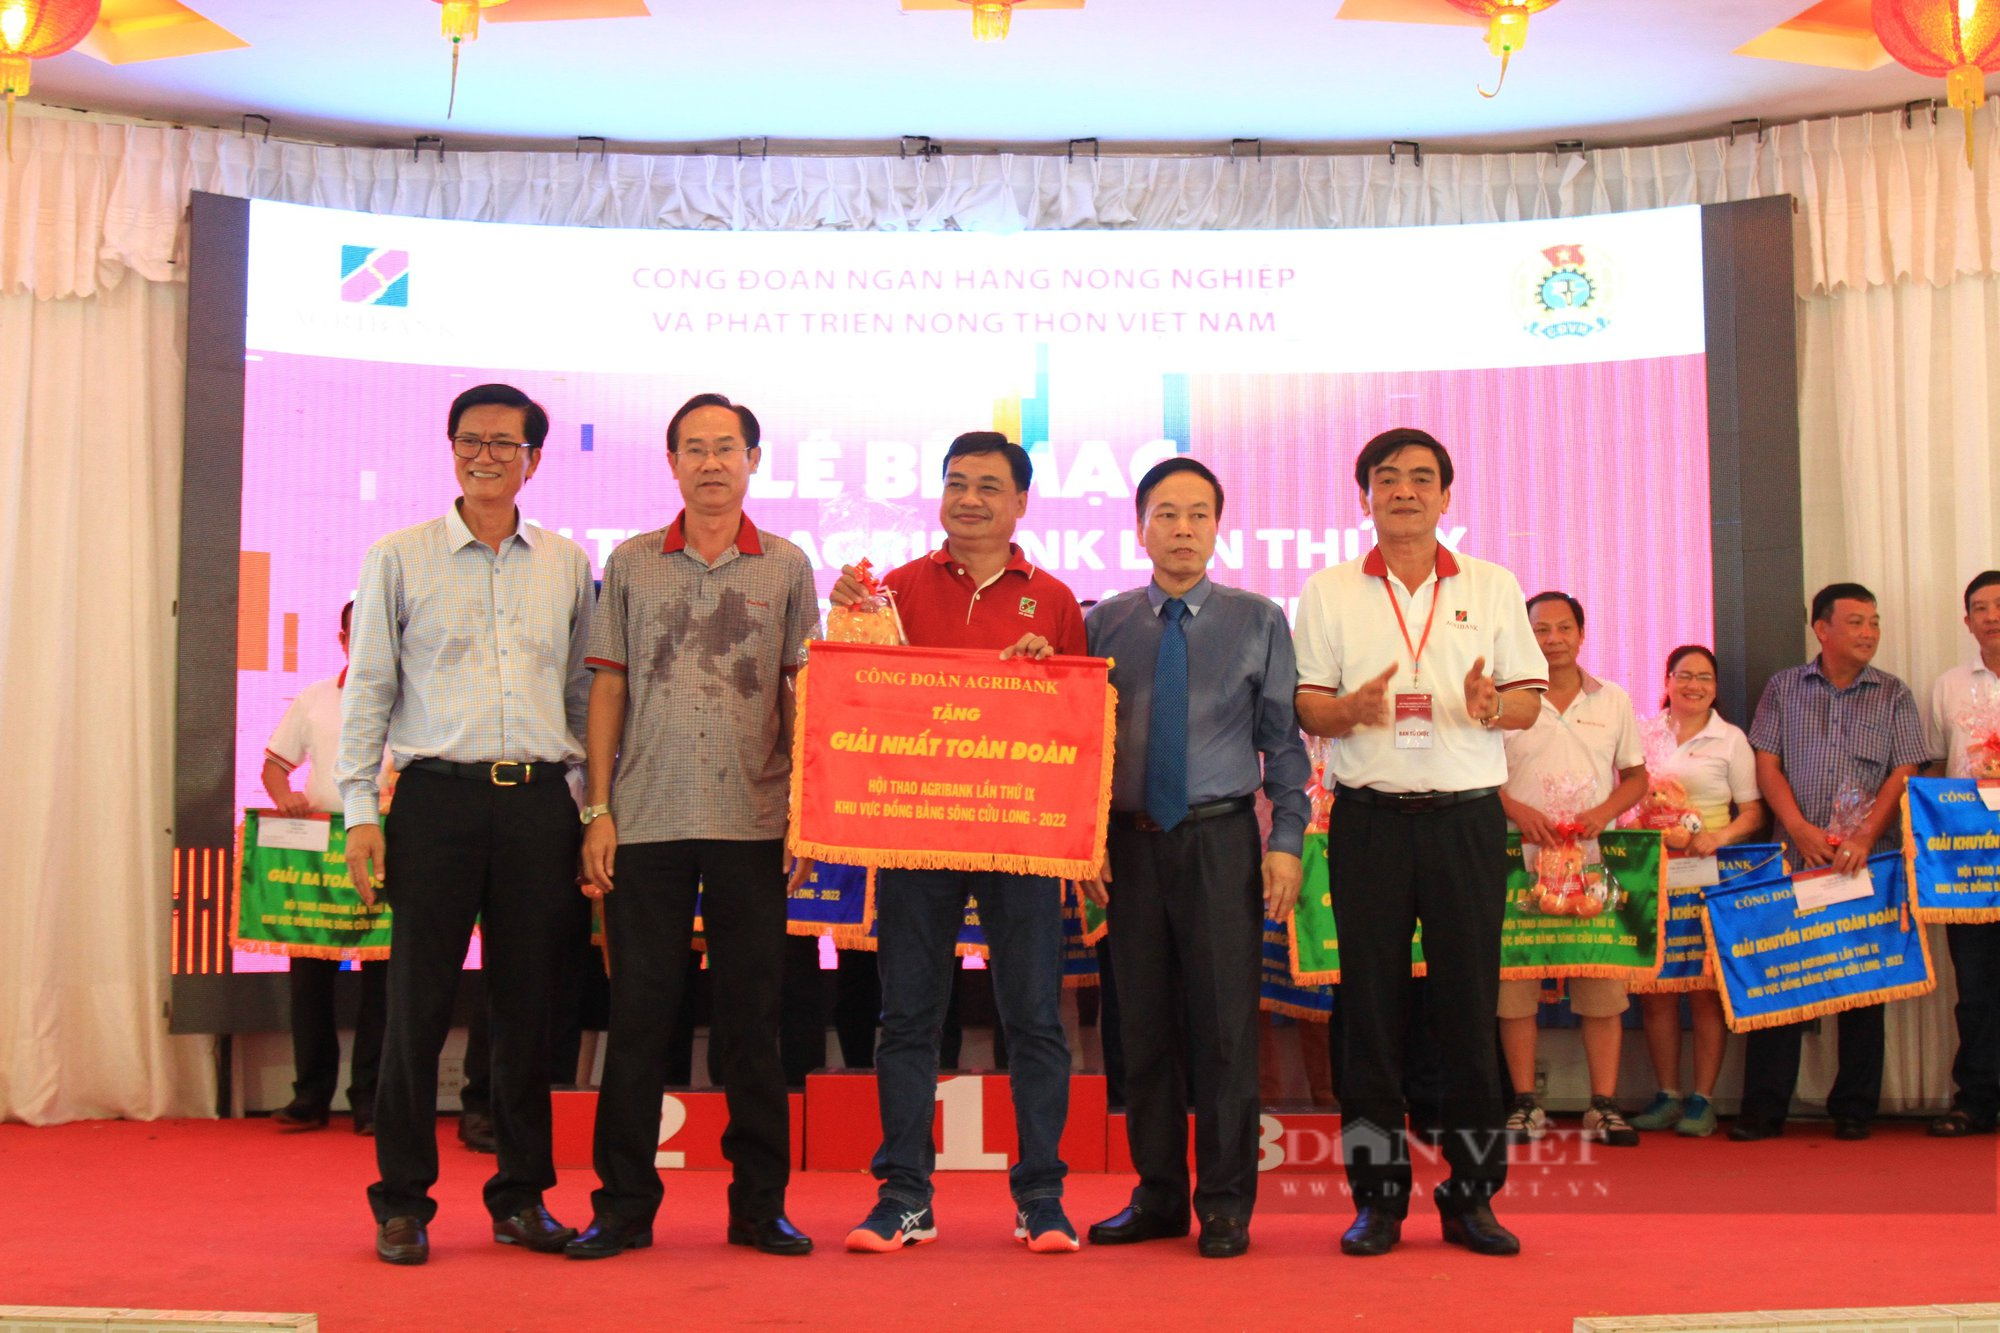 Đoàn Agribank chi nhánh An Giang giành giải Nhất toàn đoàn tại Hội thao Agribank lần thứ IX khu vực ĐBSCL - Ảnh 1.